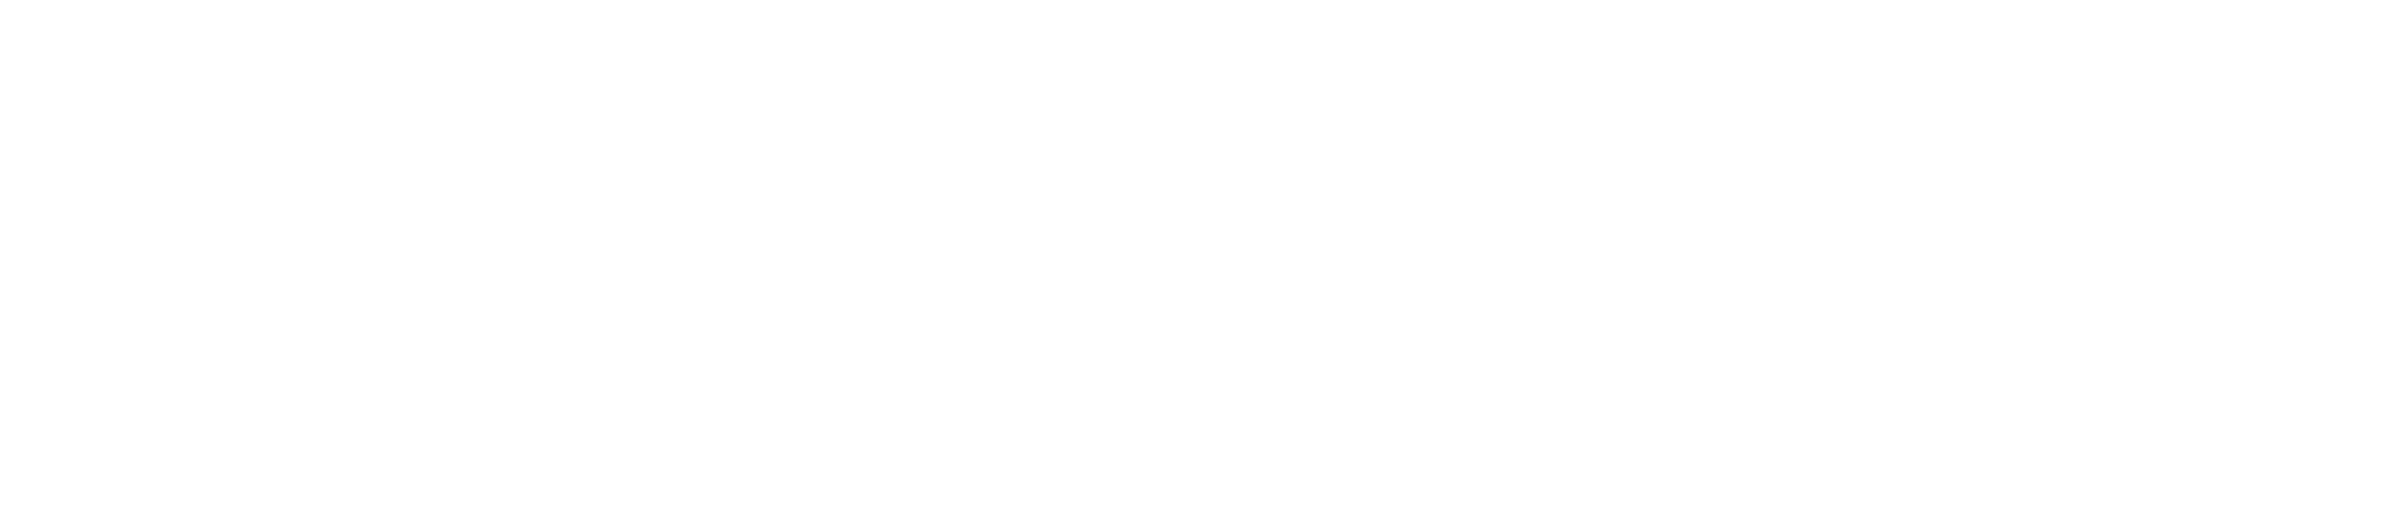 Nginx Logo PNG - 180309